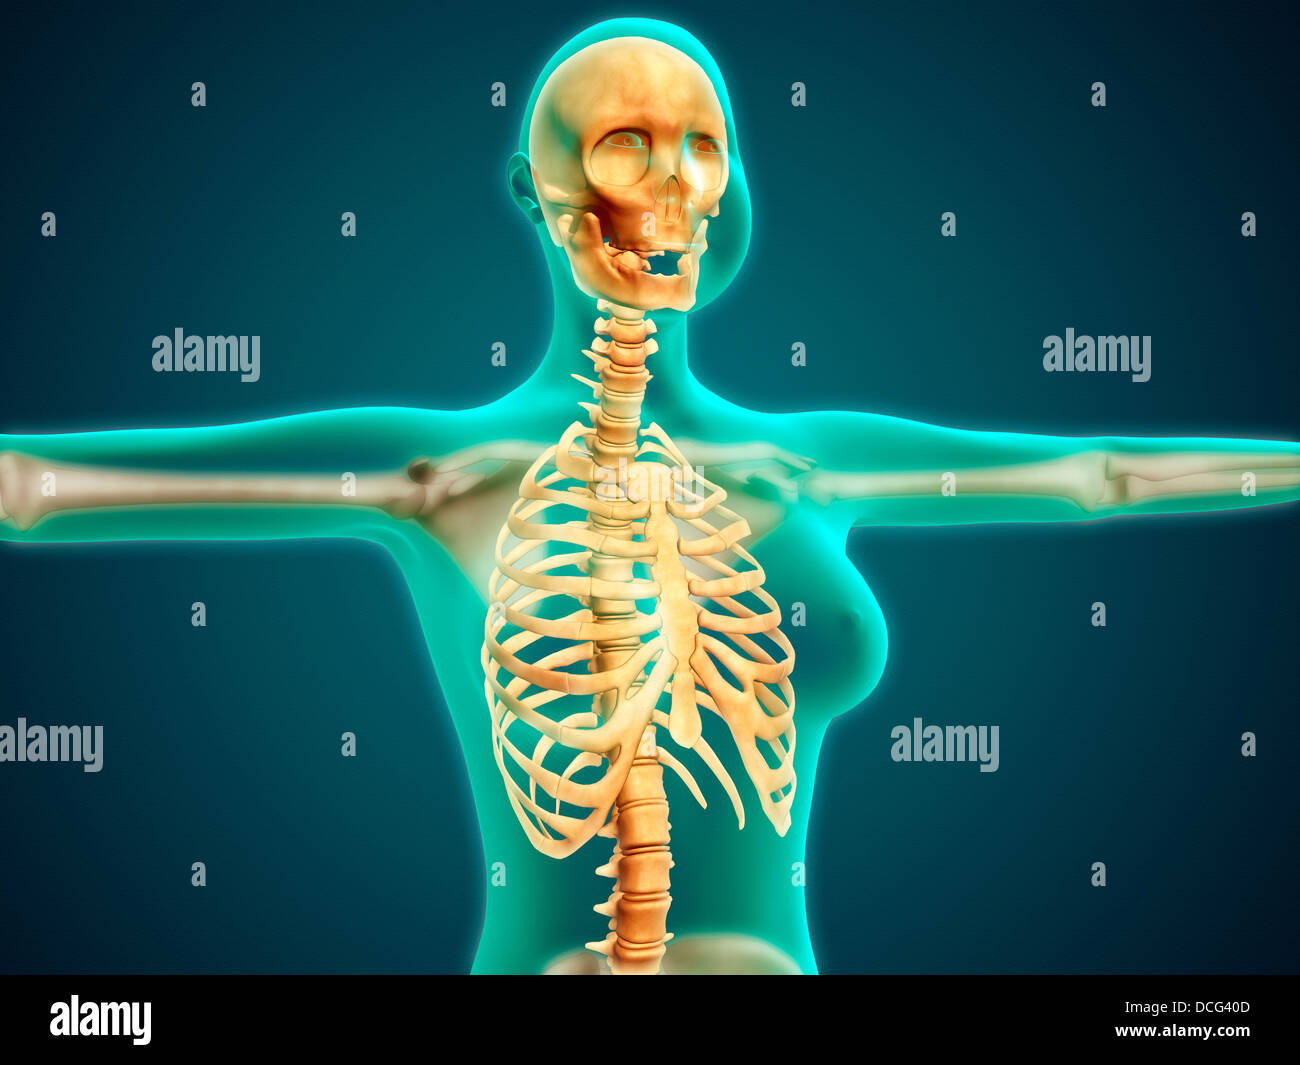 Vista de rayos X de la parte superior del cuerpo femenino mostrando la caja torácica, la columna vertebral y el cráneo. Foto de stock